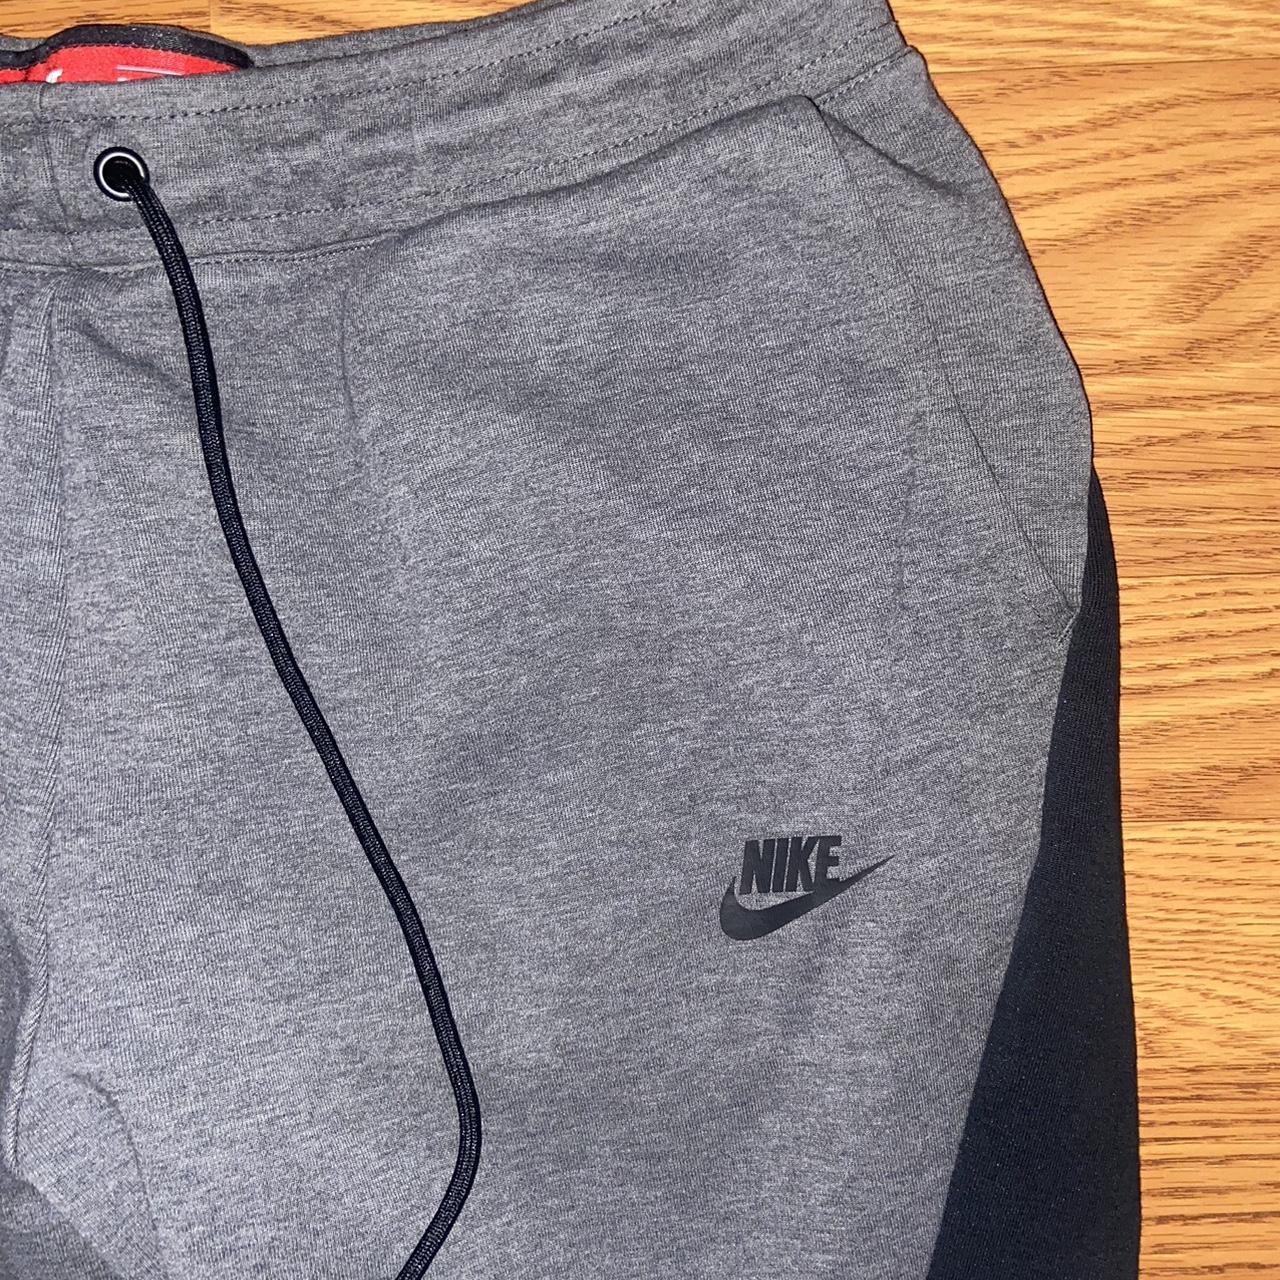 Nike Tech Fleece Sweatpants Mens Large Gray Fleece... - Depop